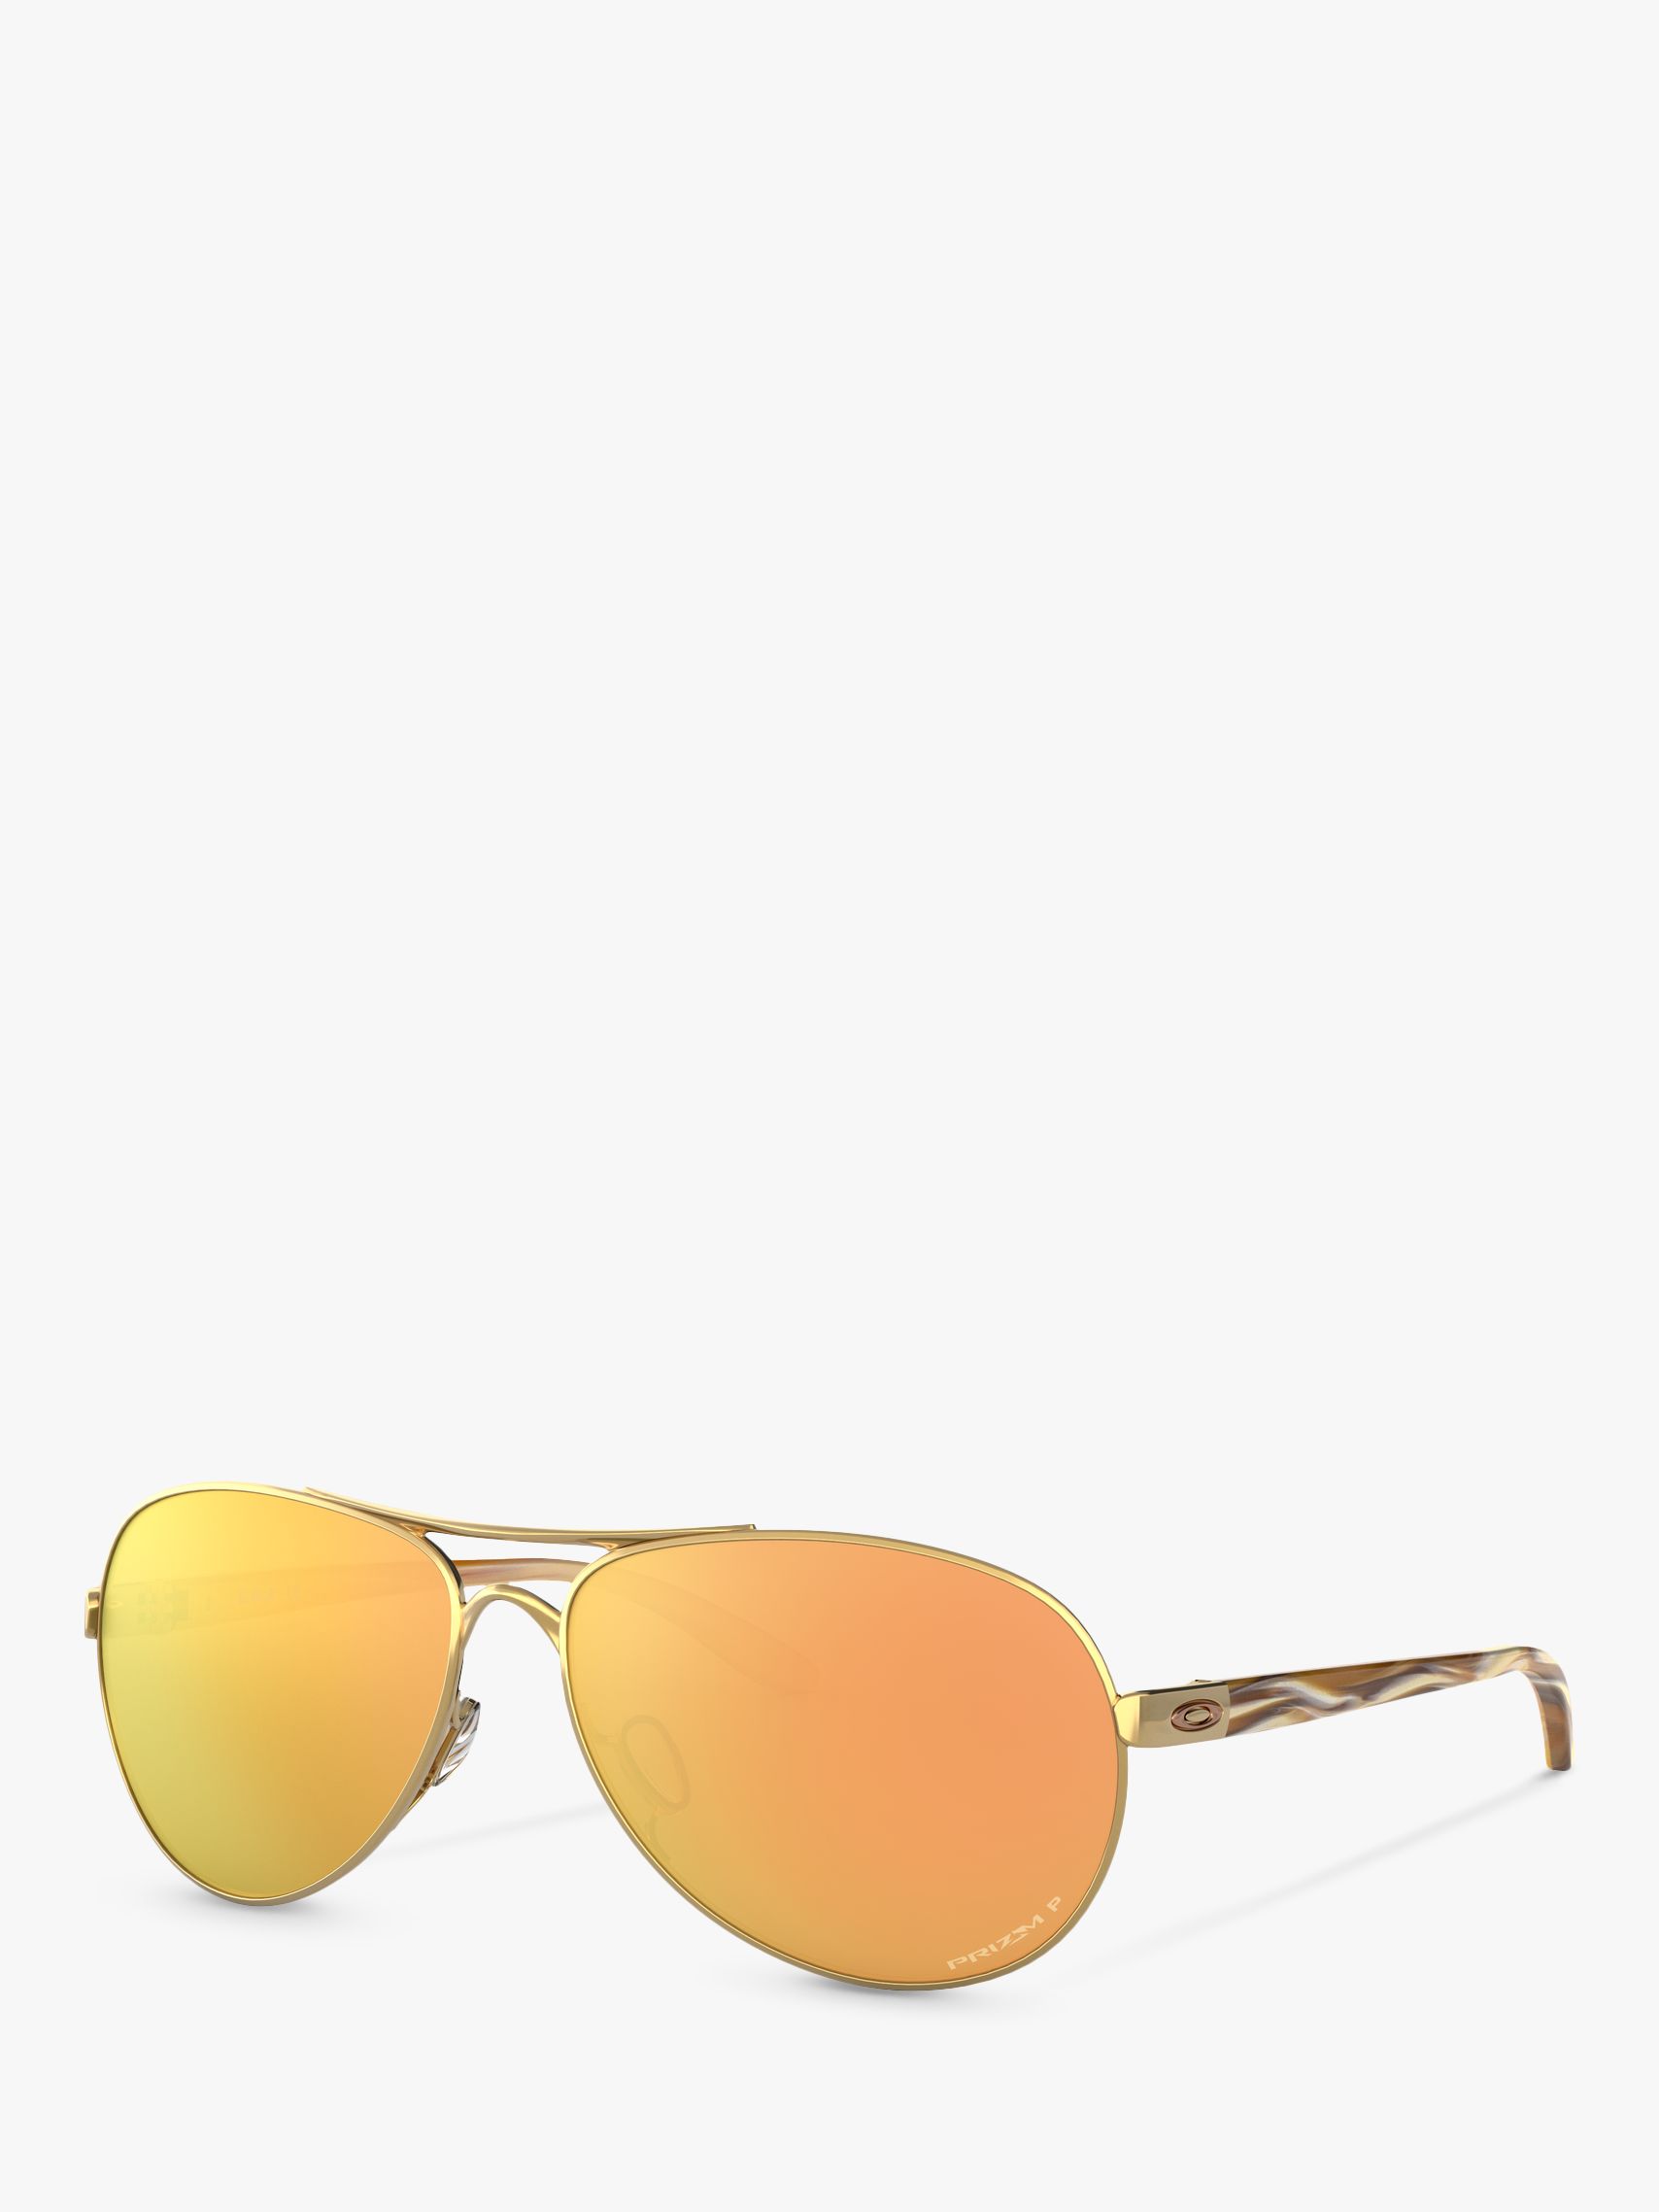 oakley women's feedback sunglasses